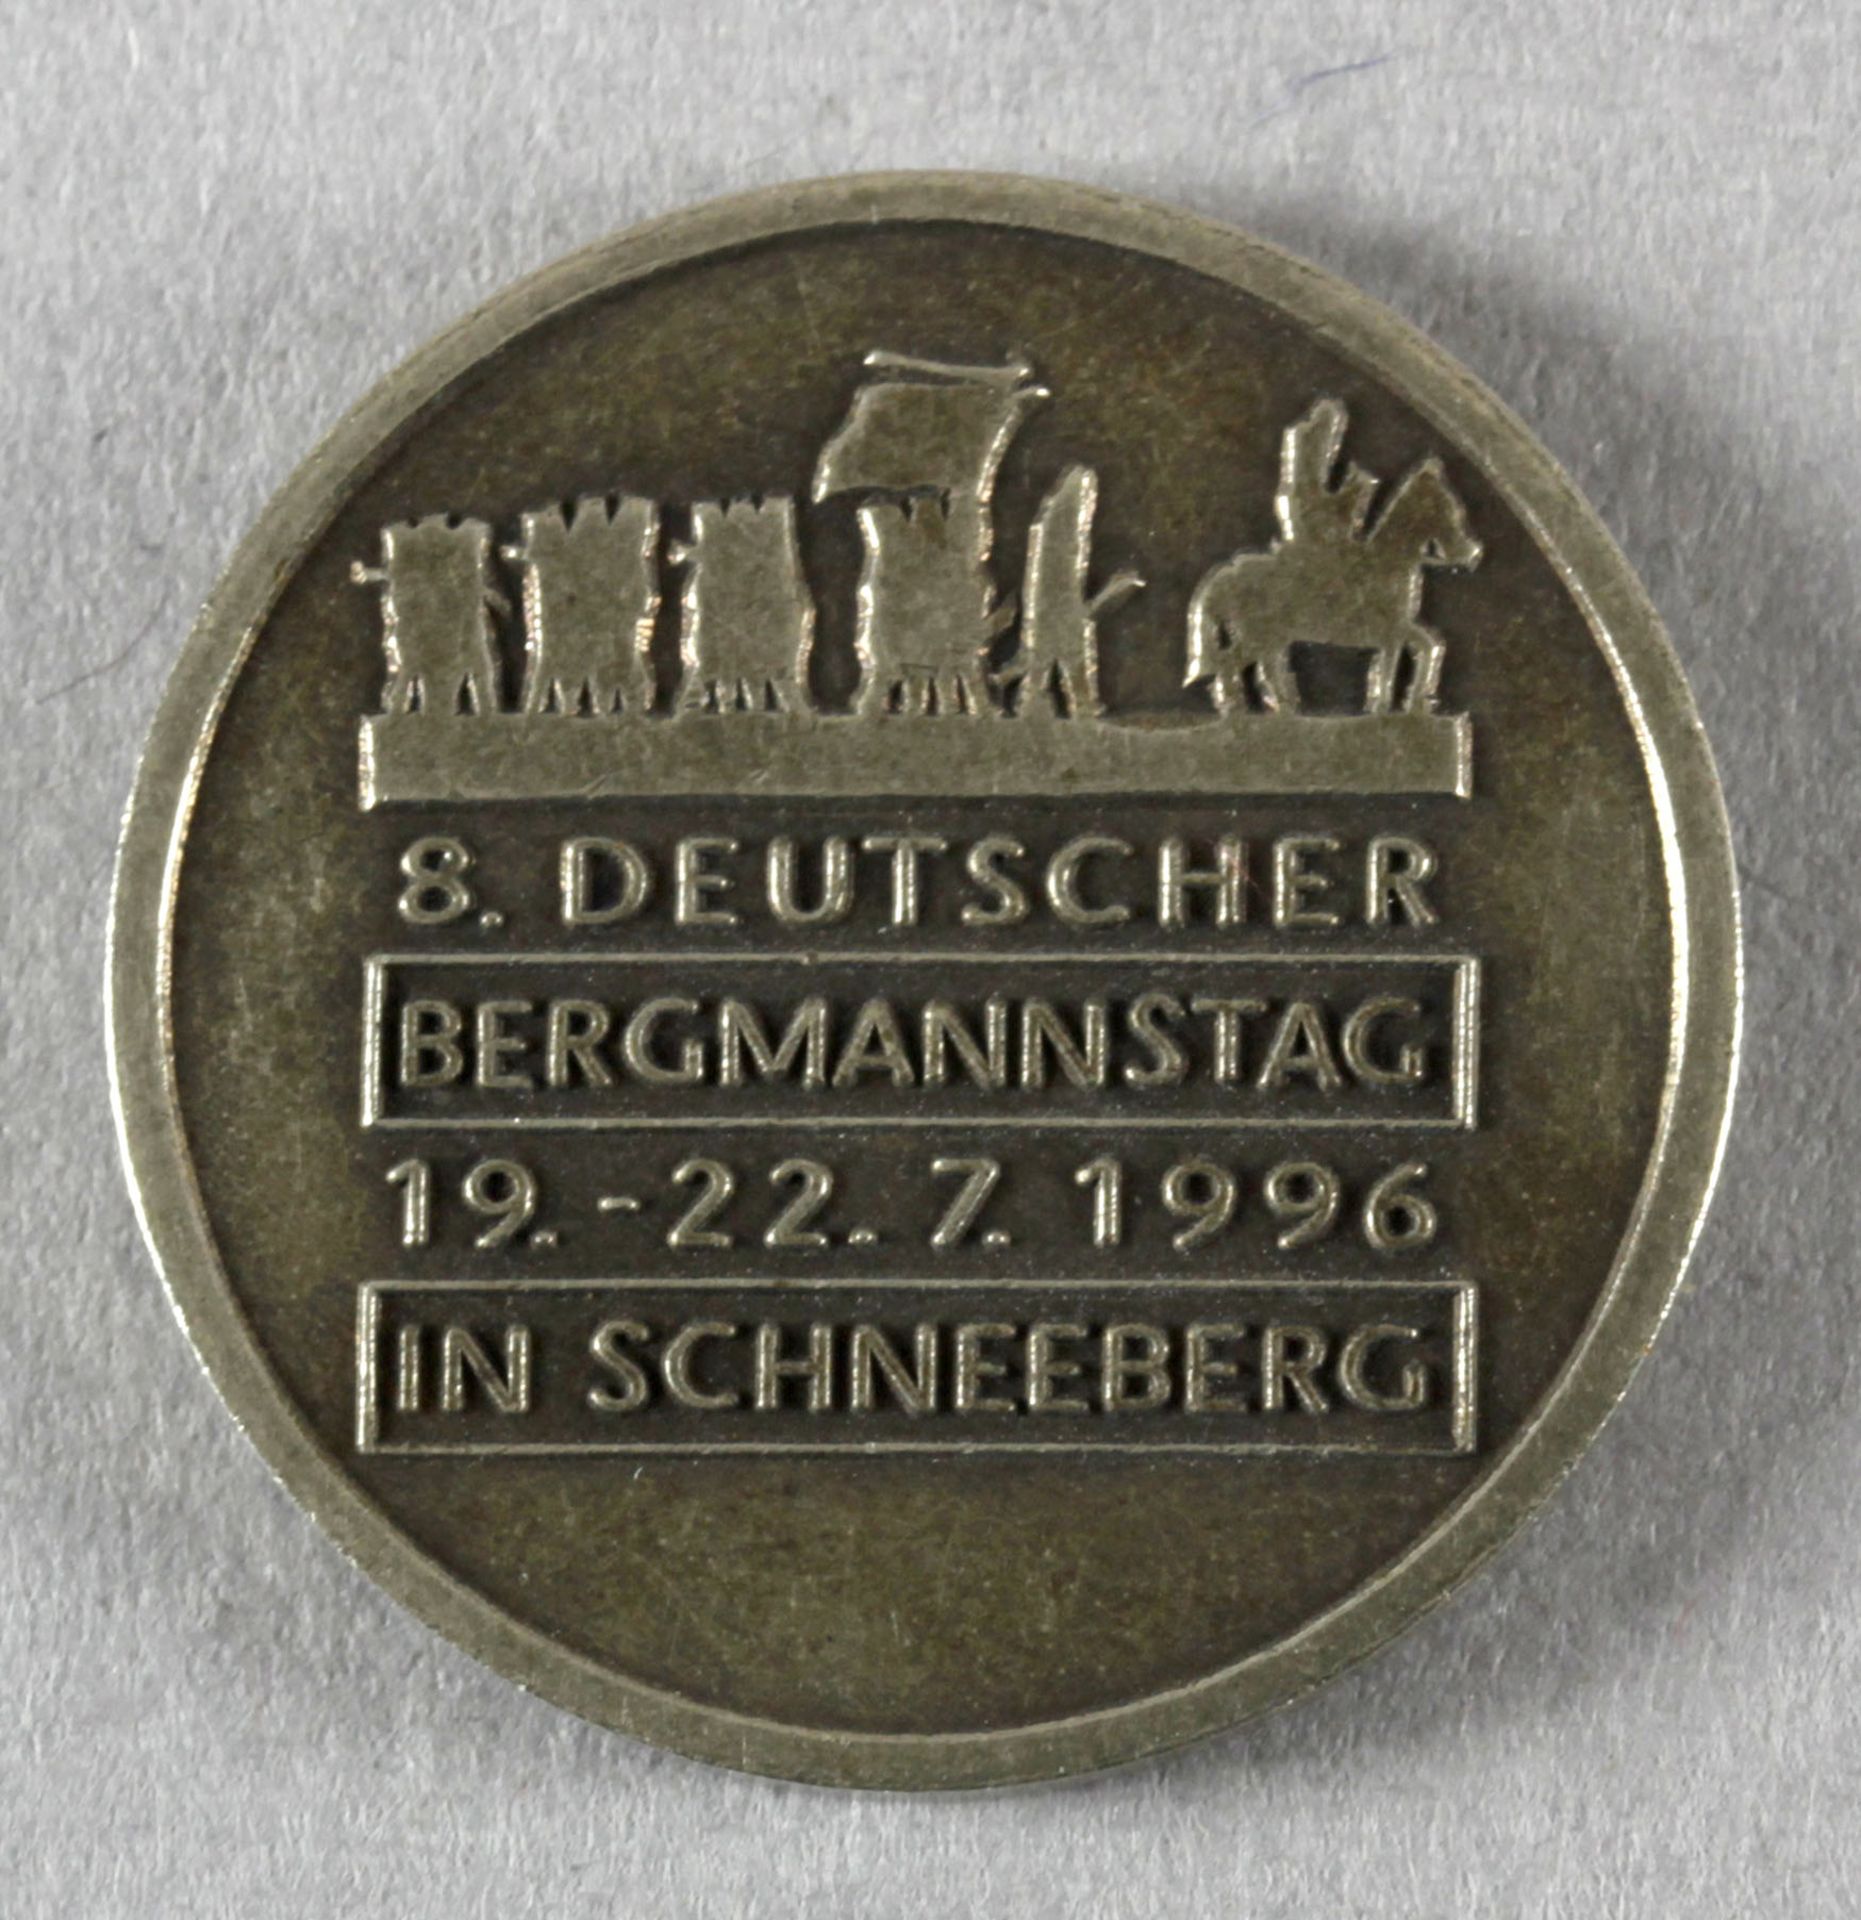 8. Deutscher Bergmannstag 1996 in Schneeberg